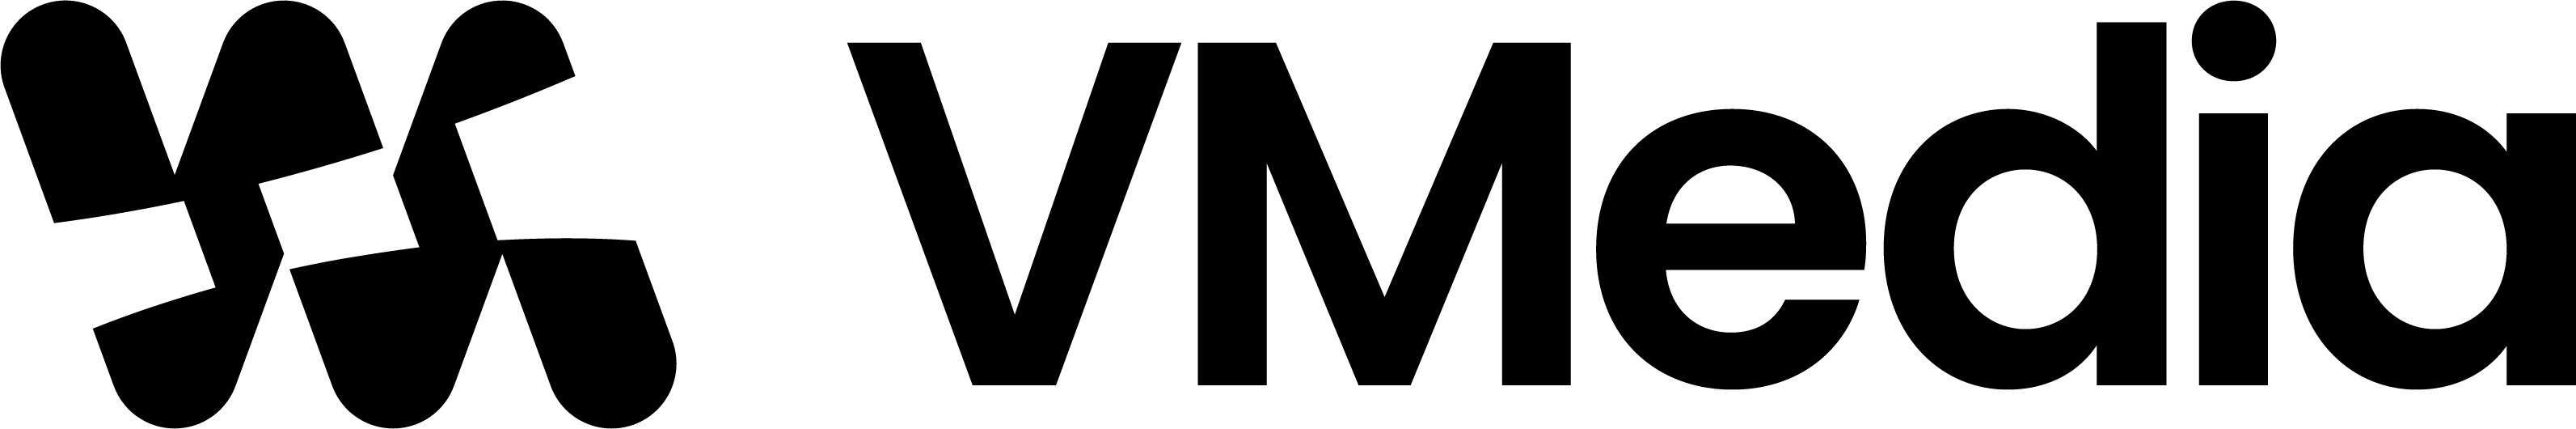 VMedia Oy logo